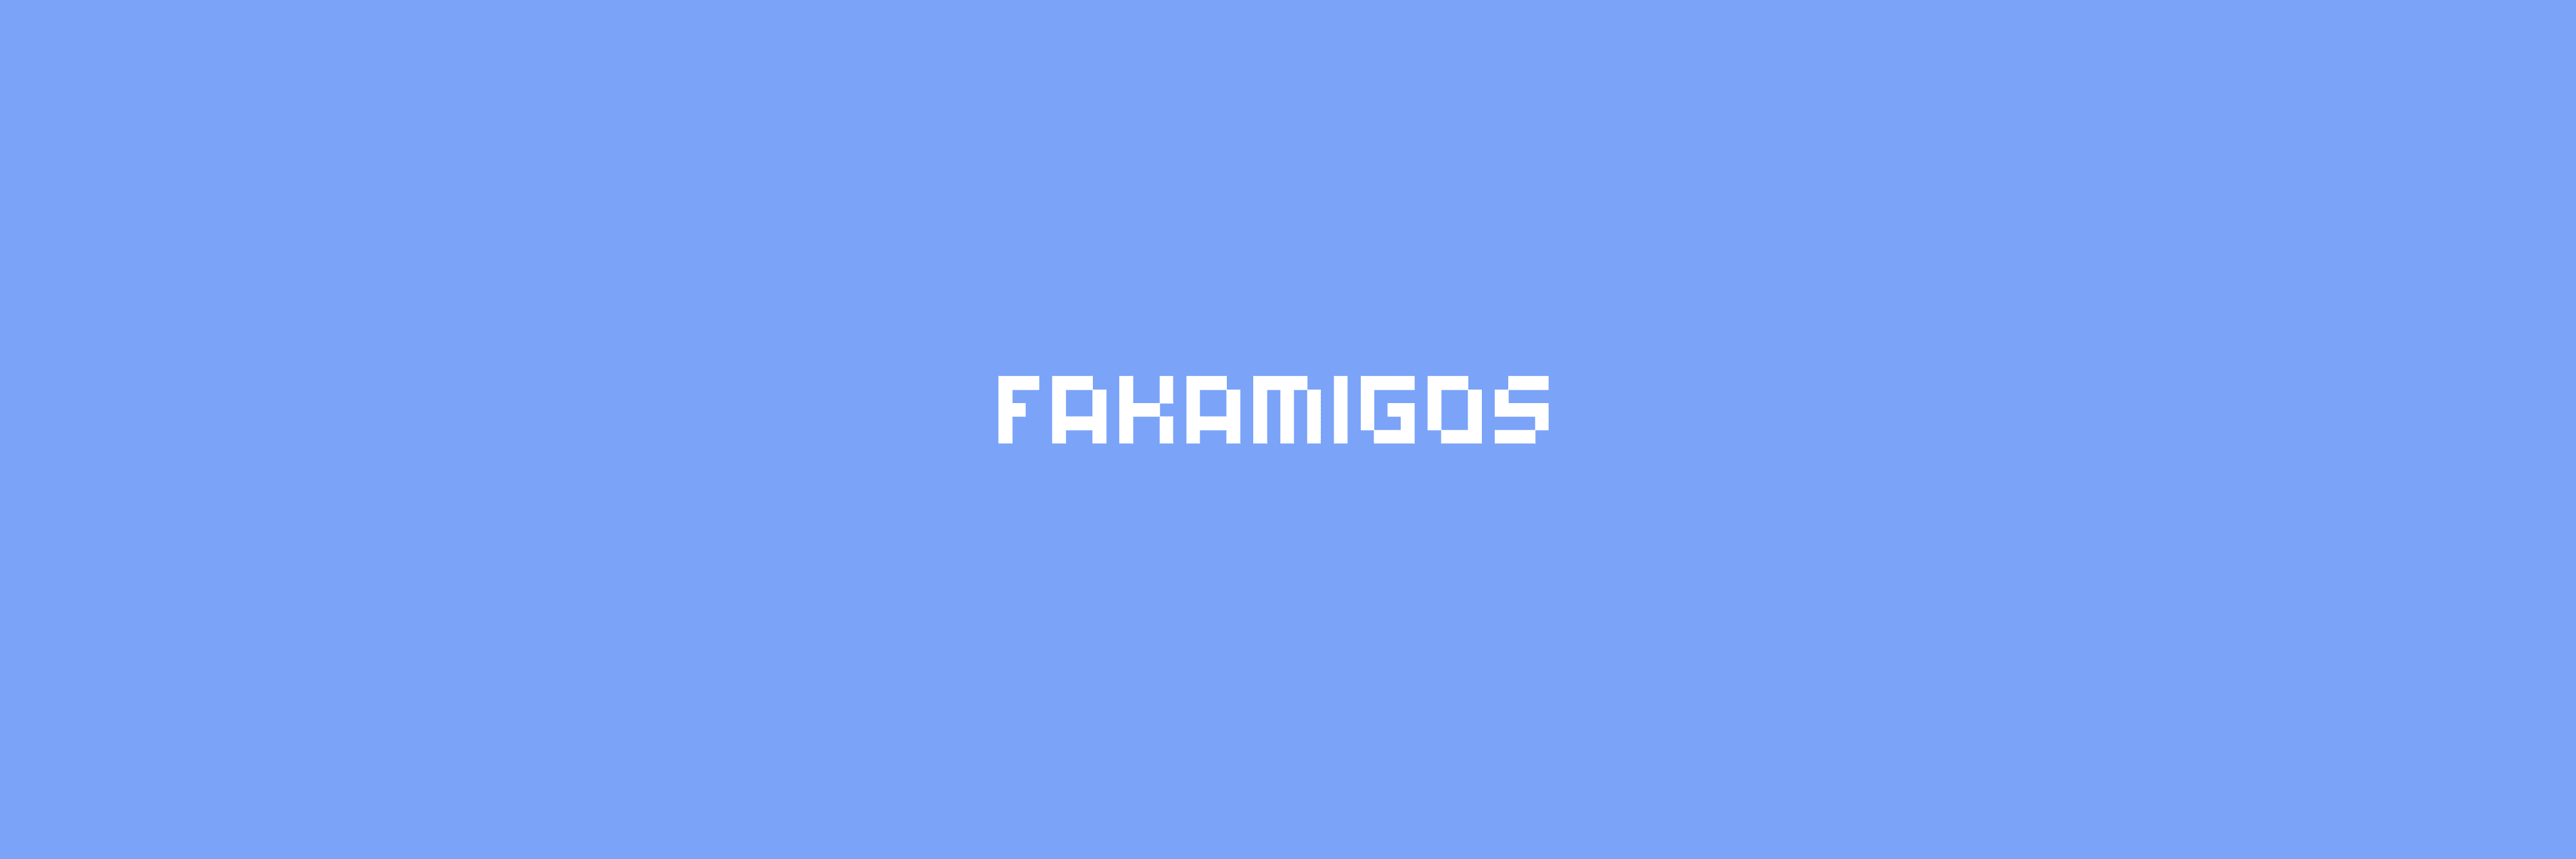 Fakamigos banner